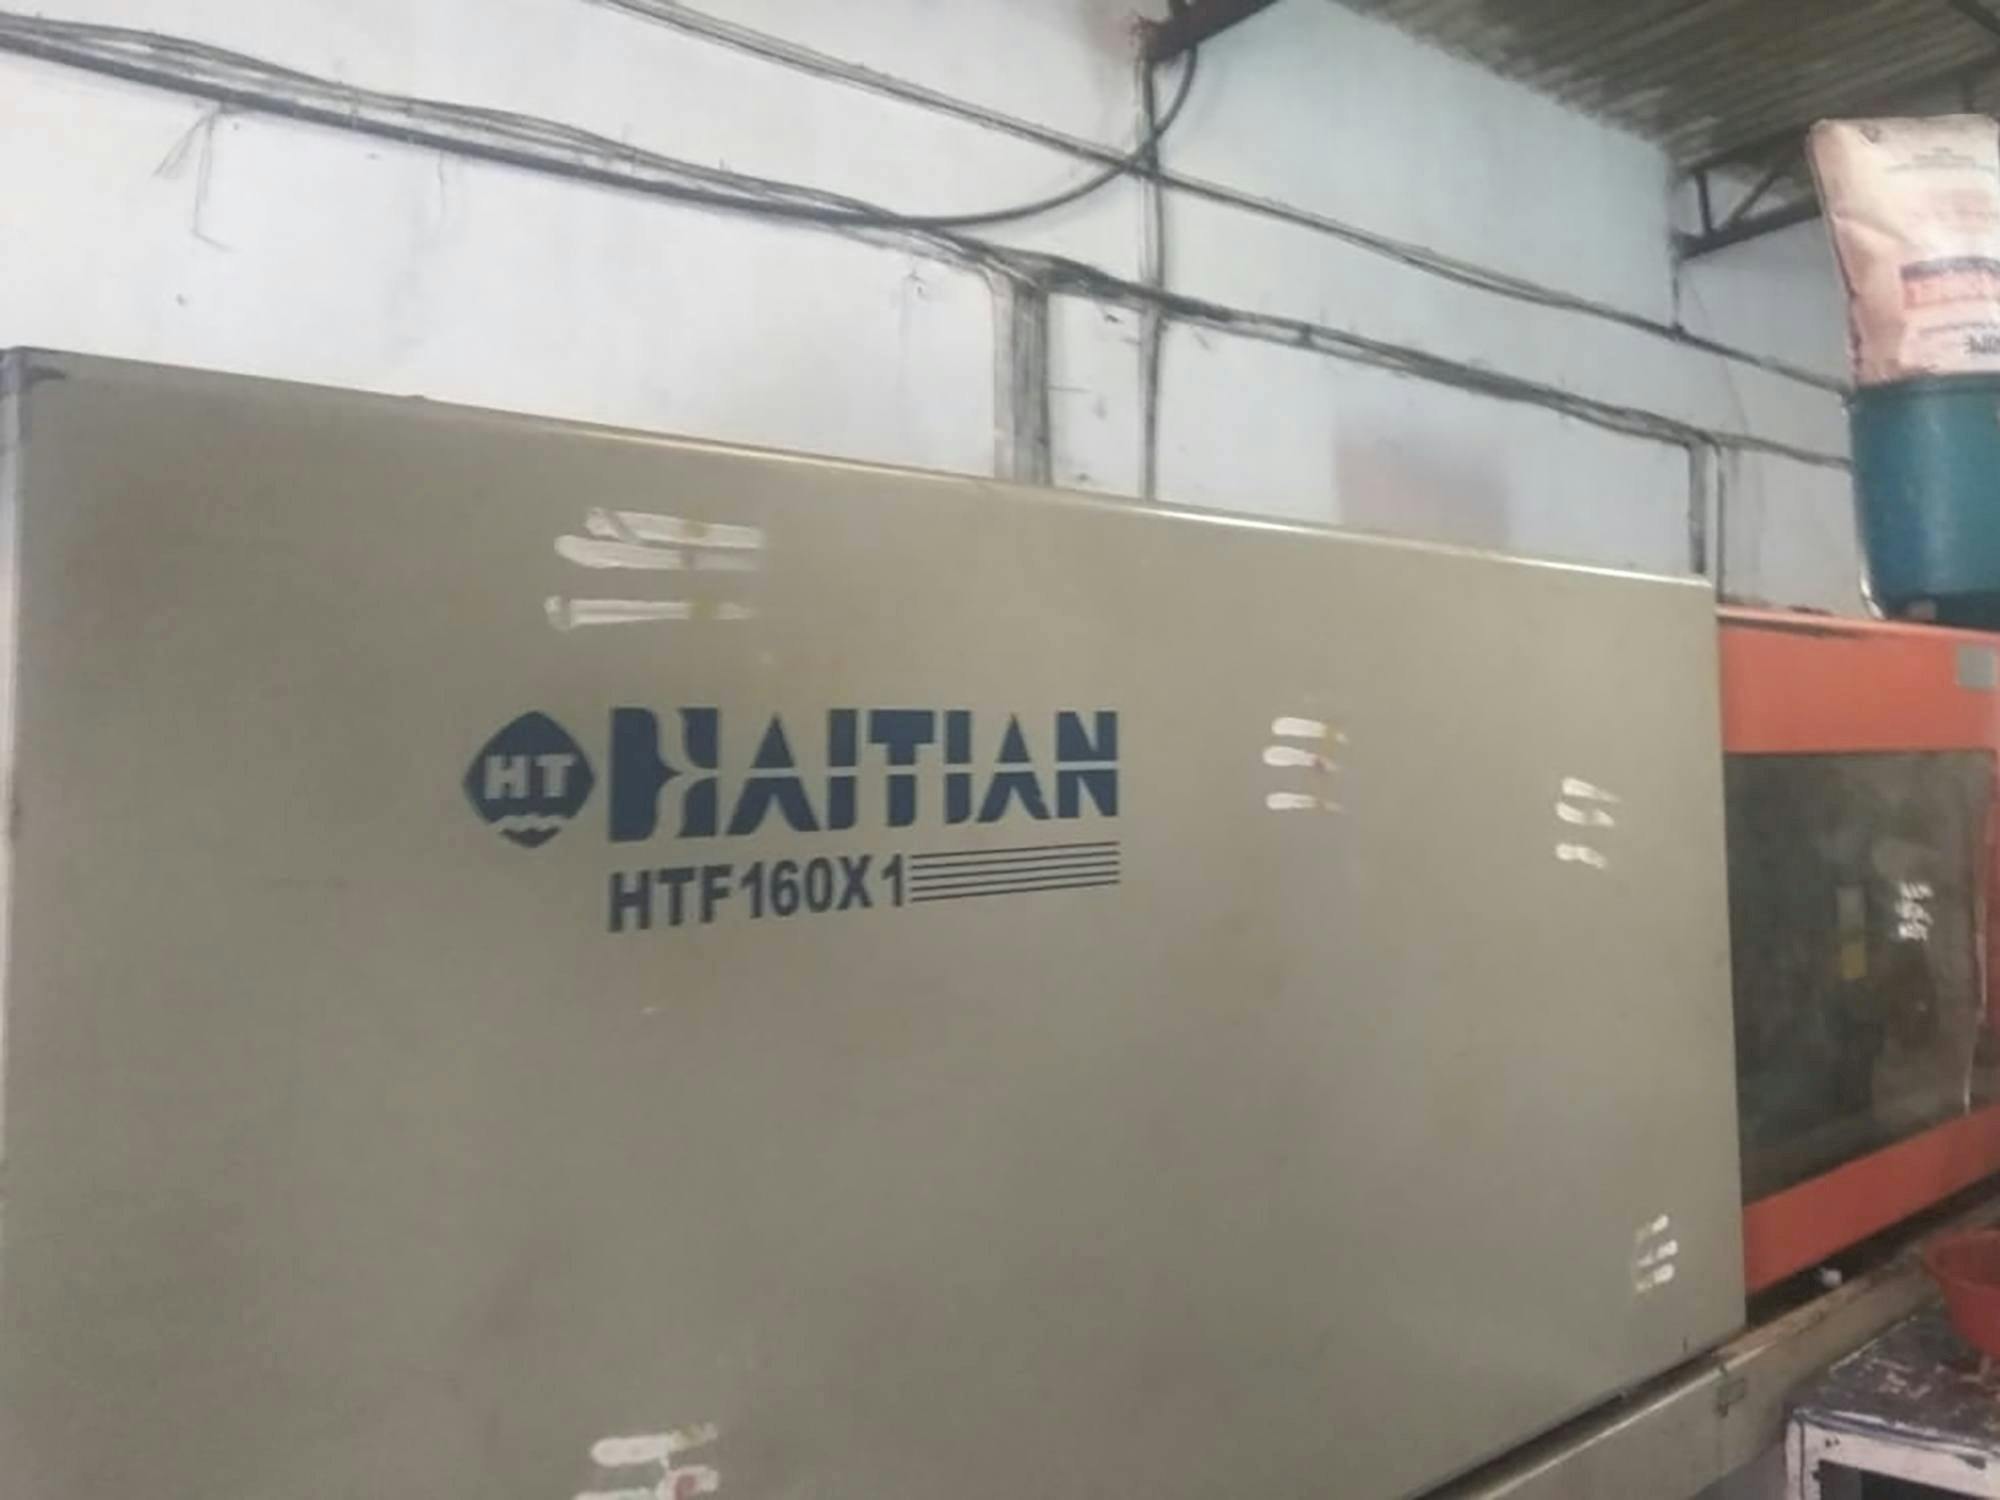 Mašīnas HAITIAN HTF160X1 pretskats